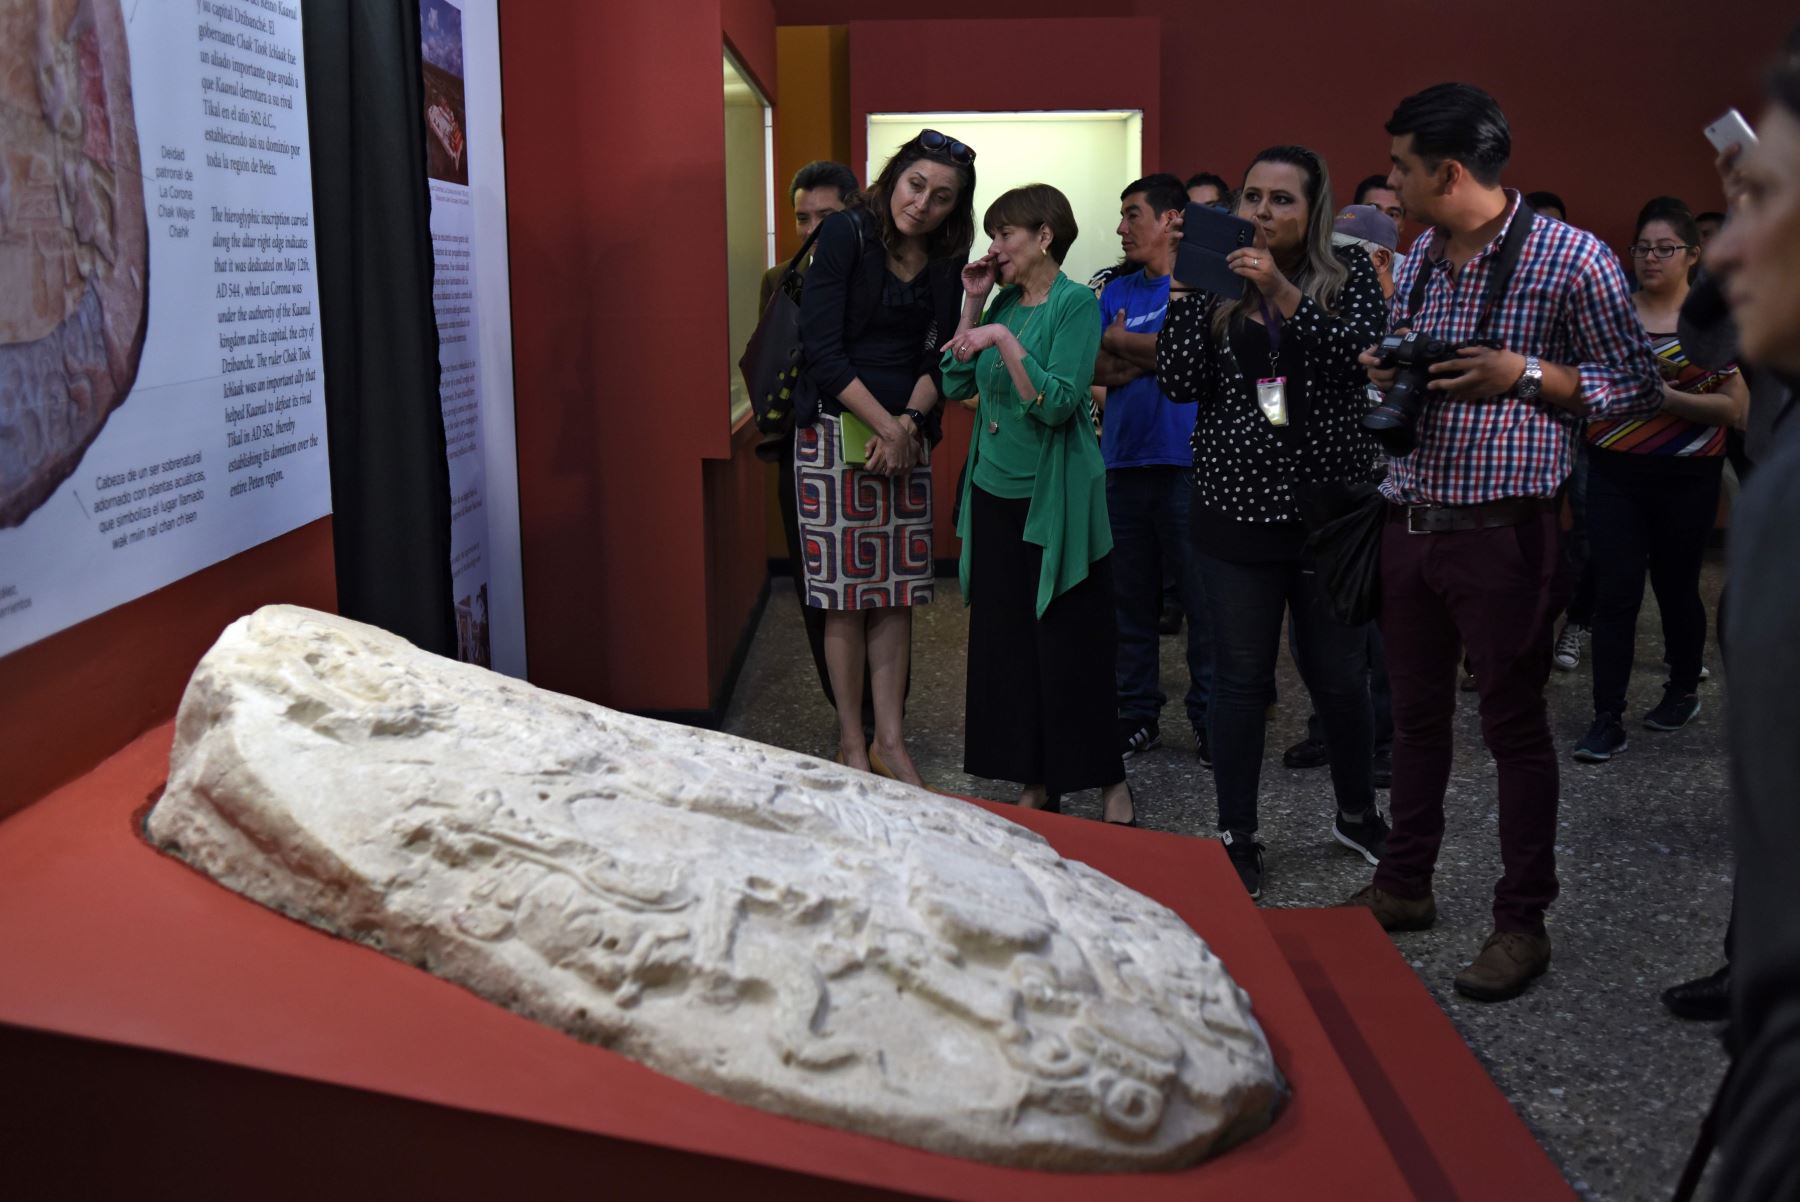 Altar descubierto en Guatemala muestra «Juego de Tronos» maya